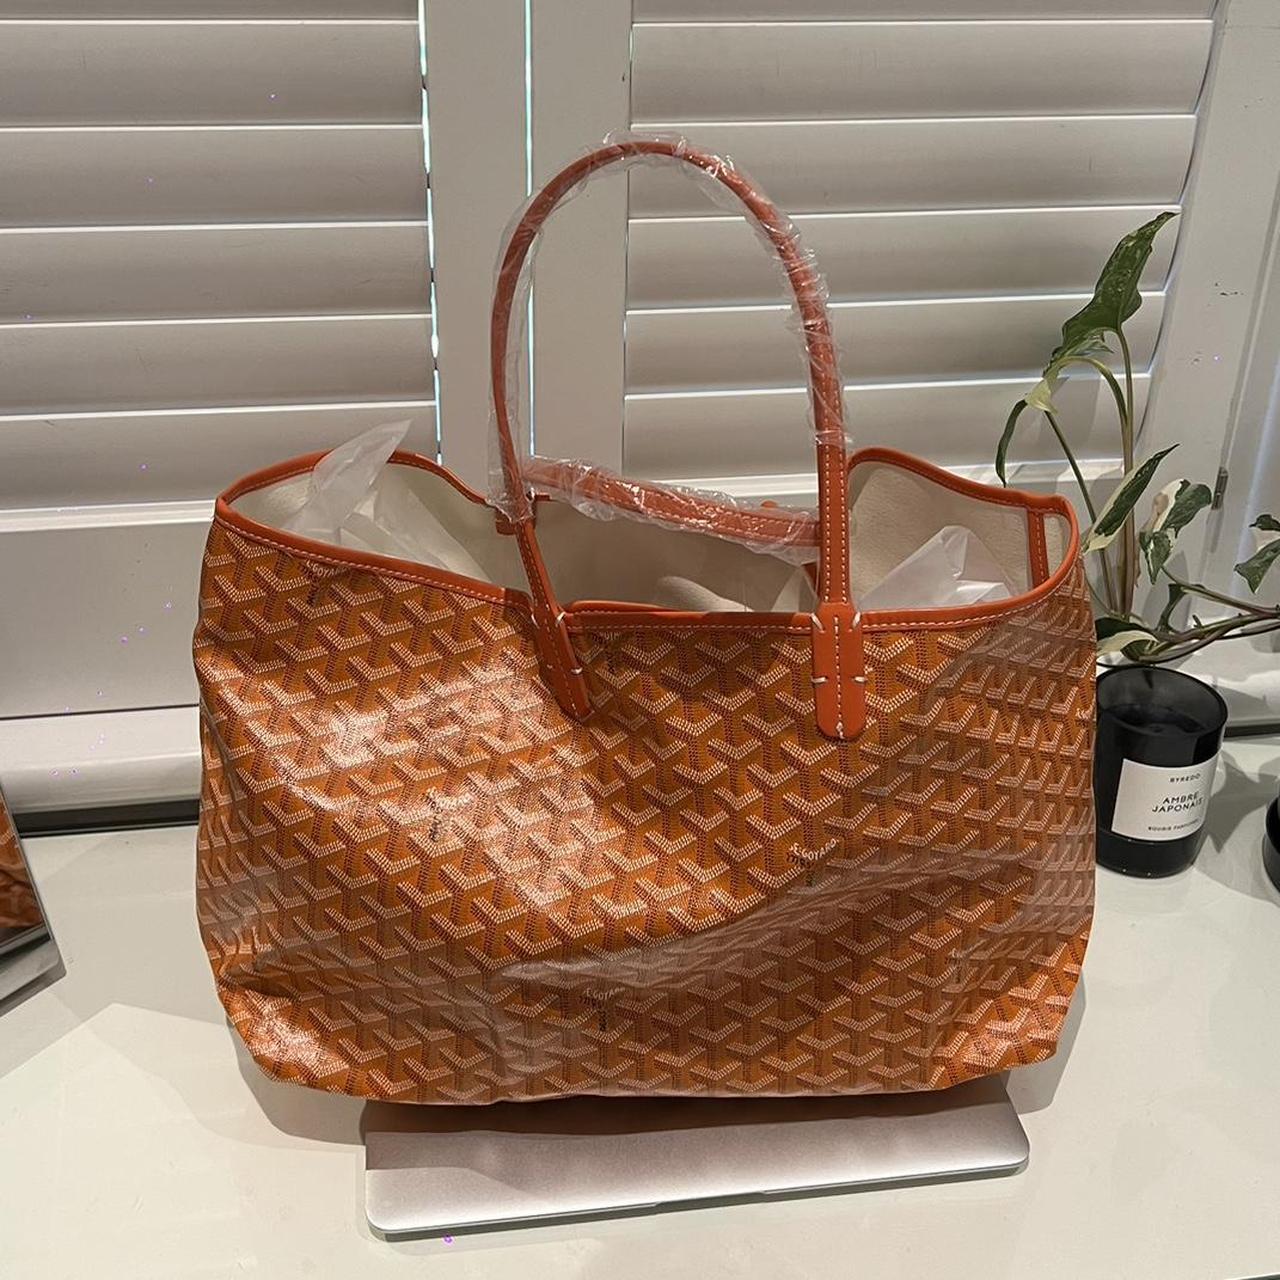 Brand new rep goyard tote bag in orange 🍊 Still in... - Depop